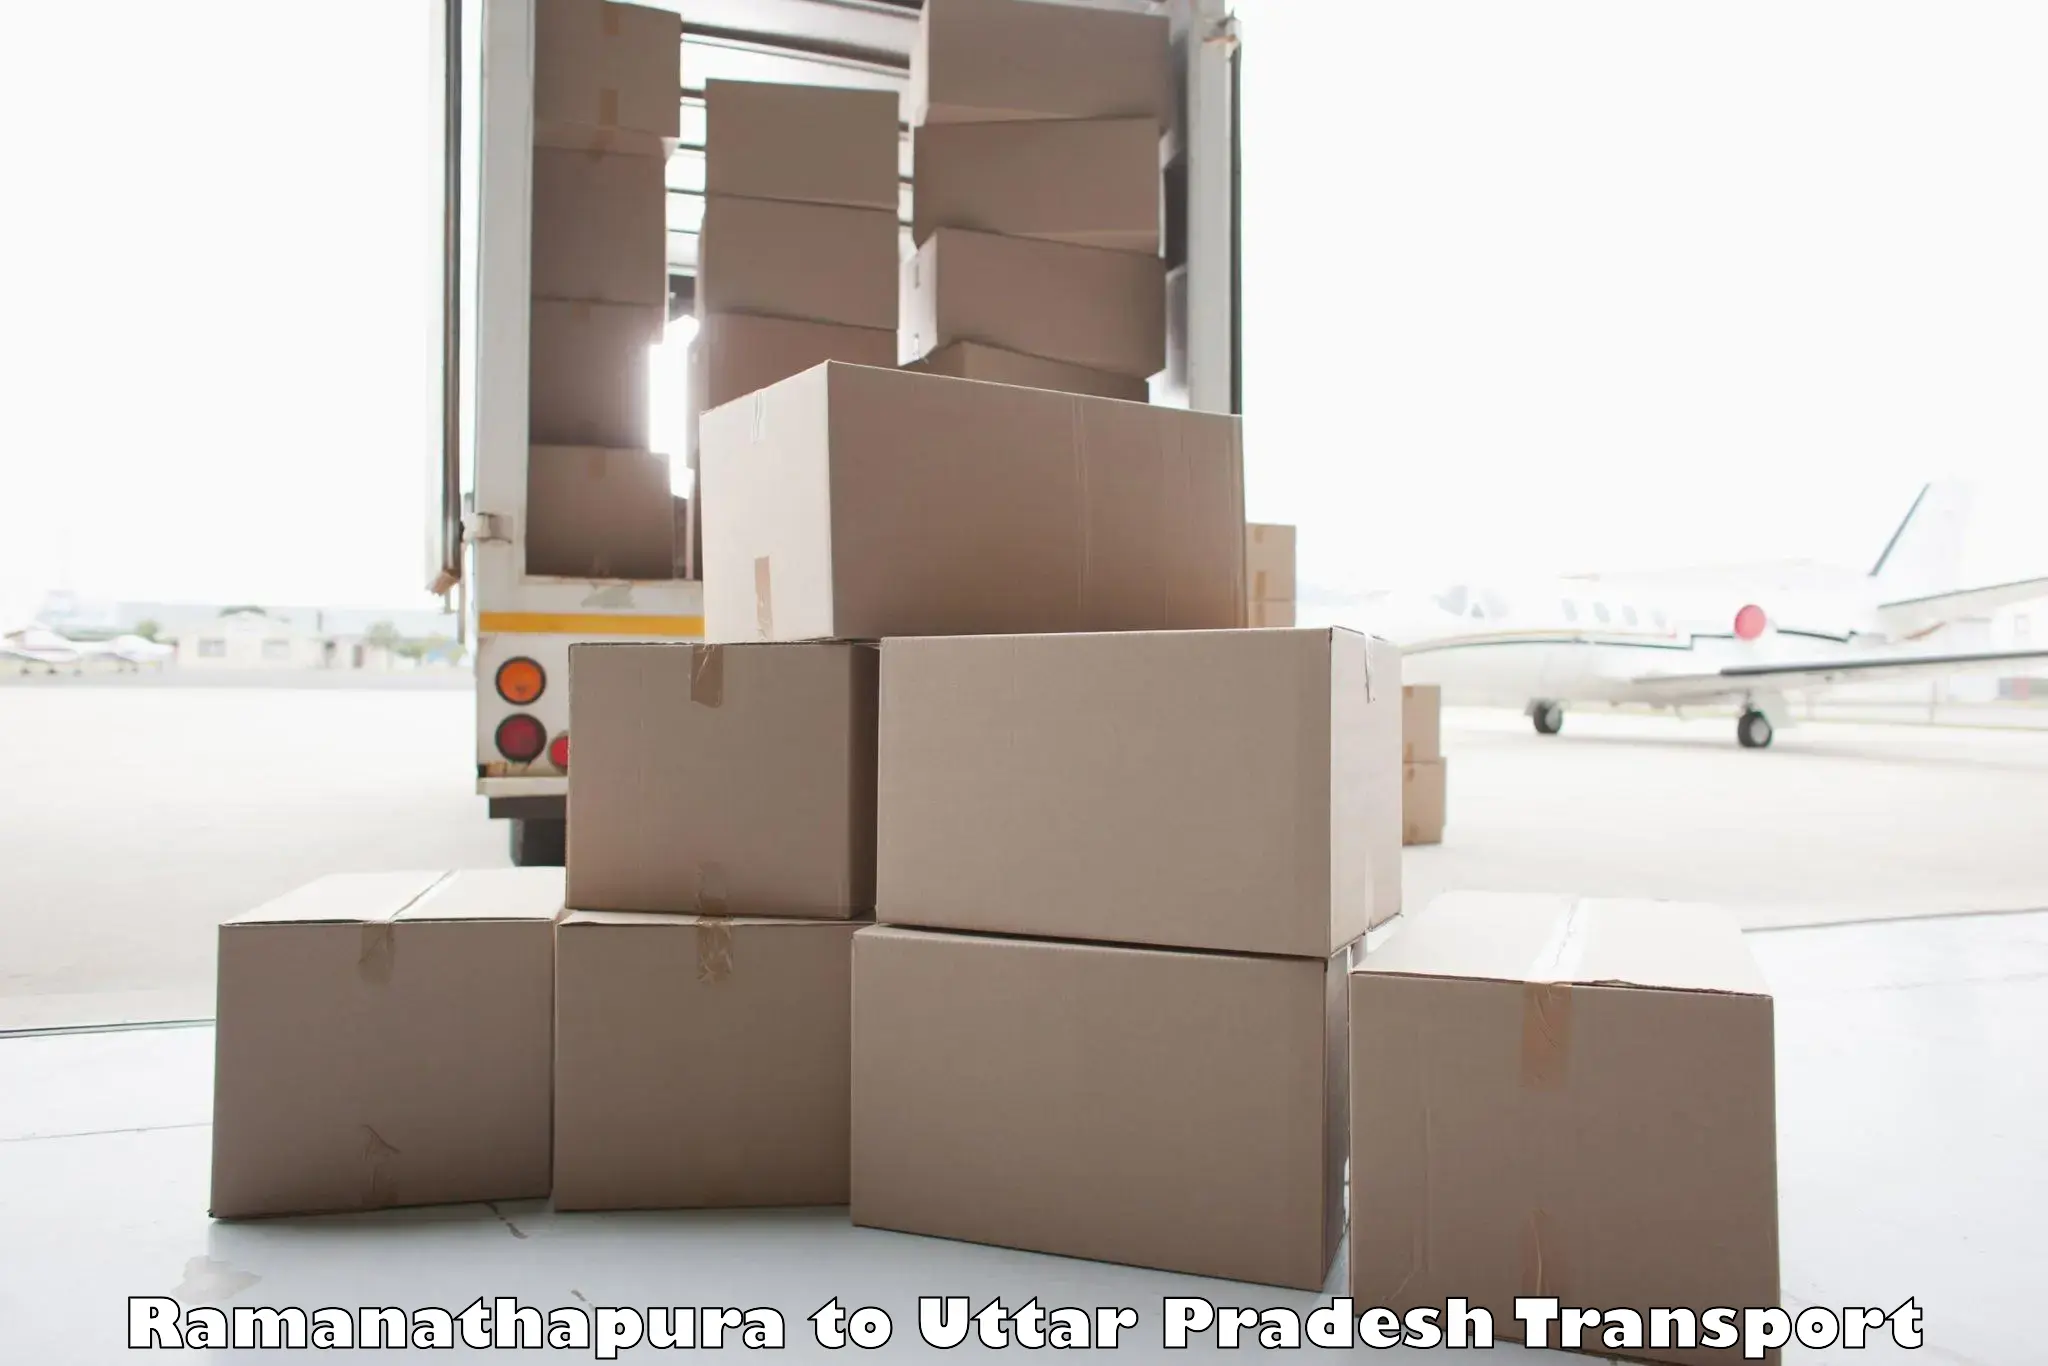 Shipping services in Ramanathapura to Dibai